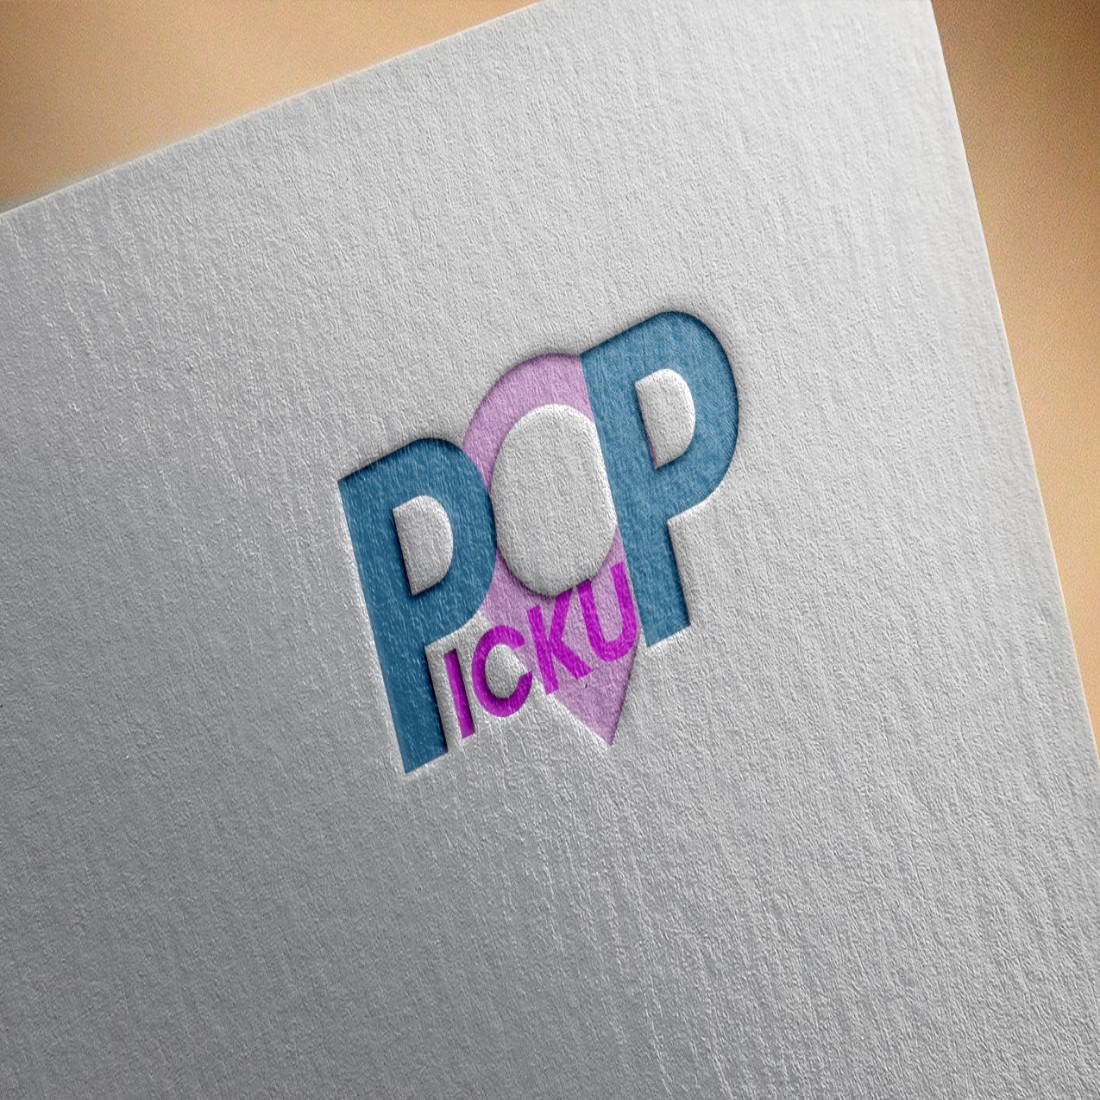 Pickup Logo Mockup on Paper Design cover image.